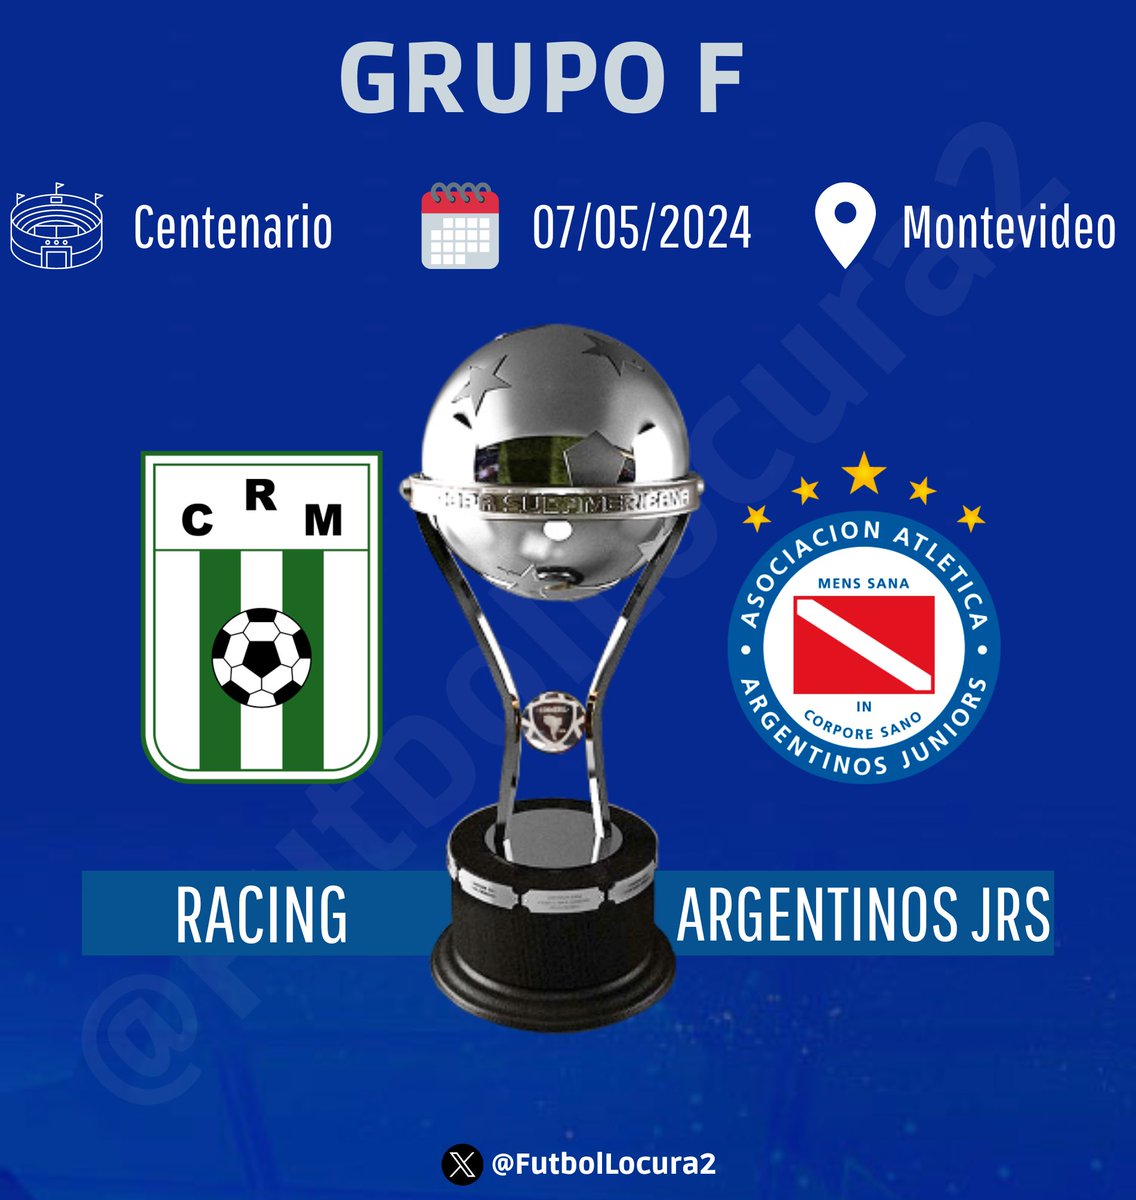 🏆 COPA SUDAMERICANA 2024

🇺🇾 RACING 🆚 ARGENTINOS JUNIORS 🇦🇷

⏰
🇧🇴🇻🇪 18:00
🇨🇴🇪🇨🇵🇪 17:00
🇦🇷🇧🇷🇨🇱🇵🇾🇺🇾 19:00

#Sudamericana #LaGranConquista